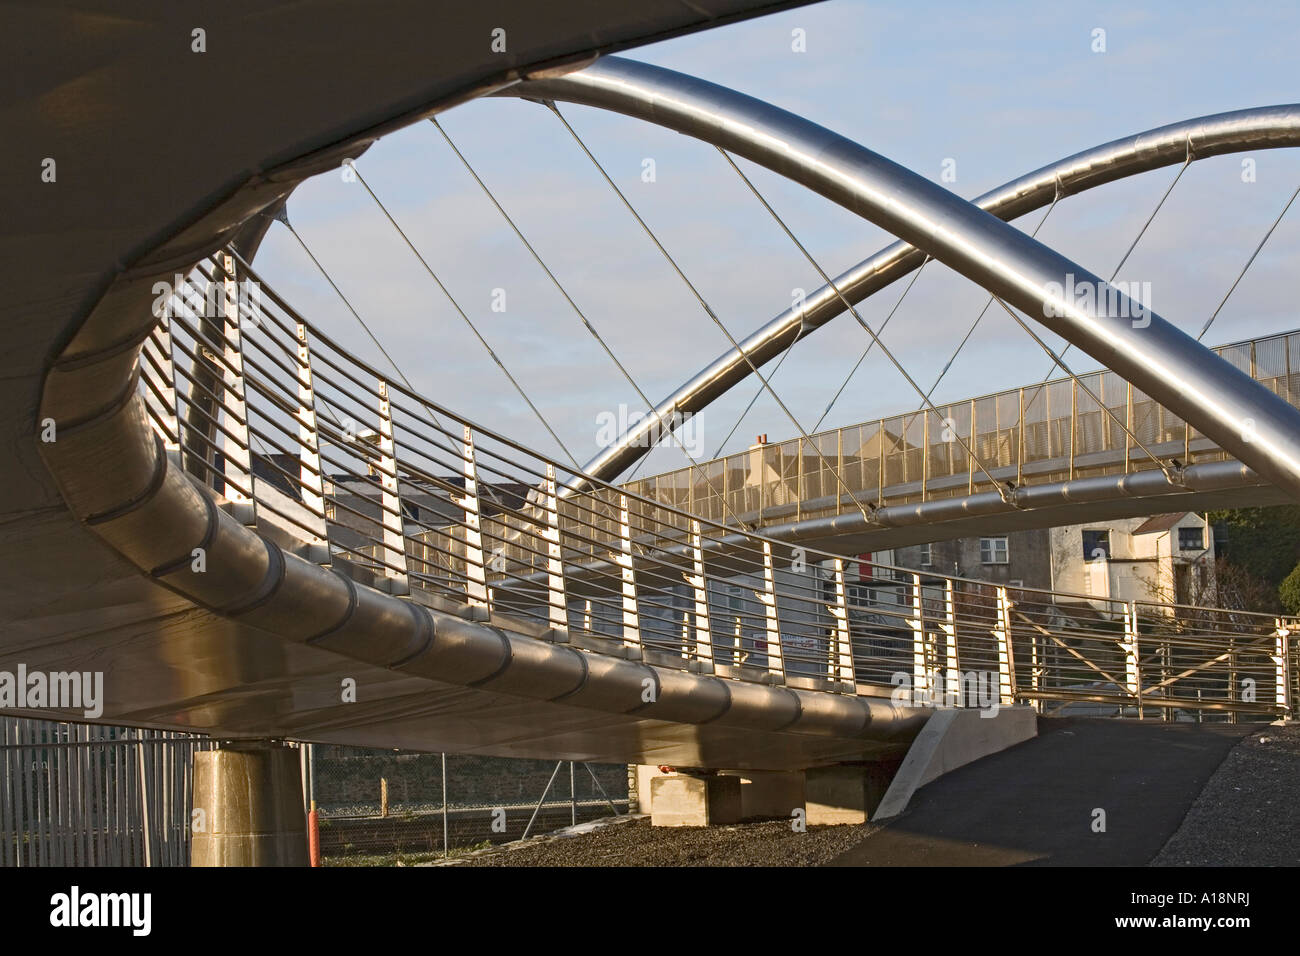 HOLYHEAD ISLE OF ANGLESEY Wales UK Dezember der Keltischen Gateway Bridge unter Verwendung europäischer Mittel anschließen Stadtzentrum zum Hafen Stockfoto